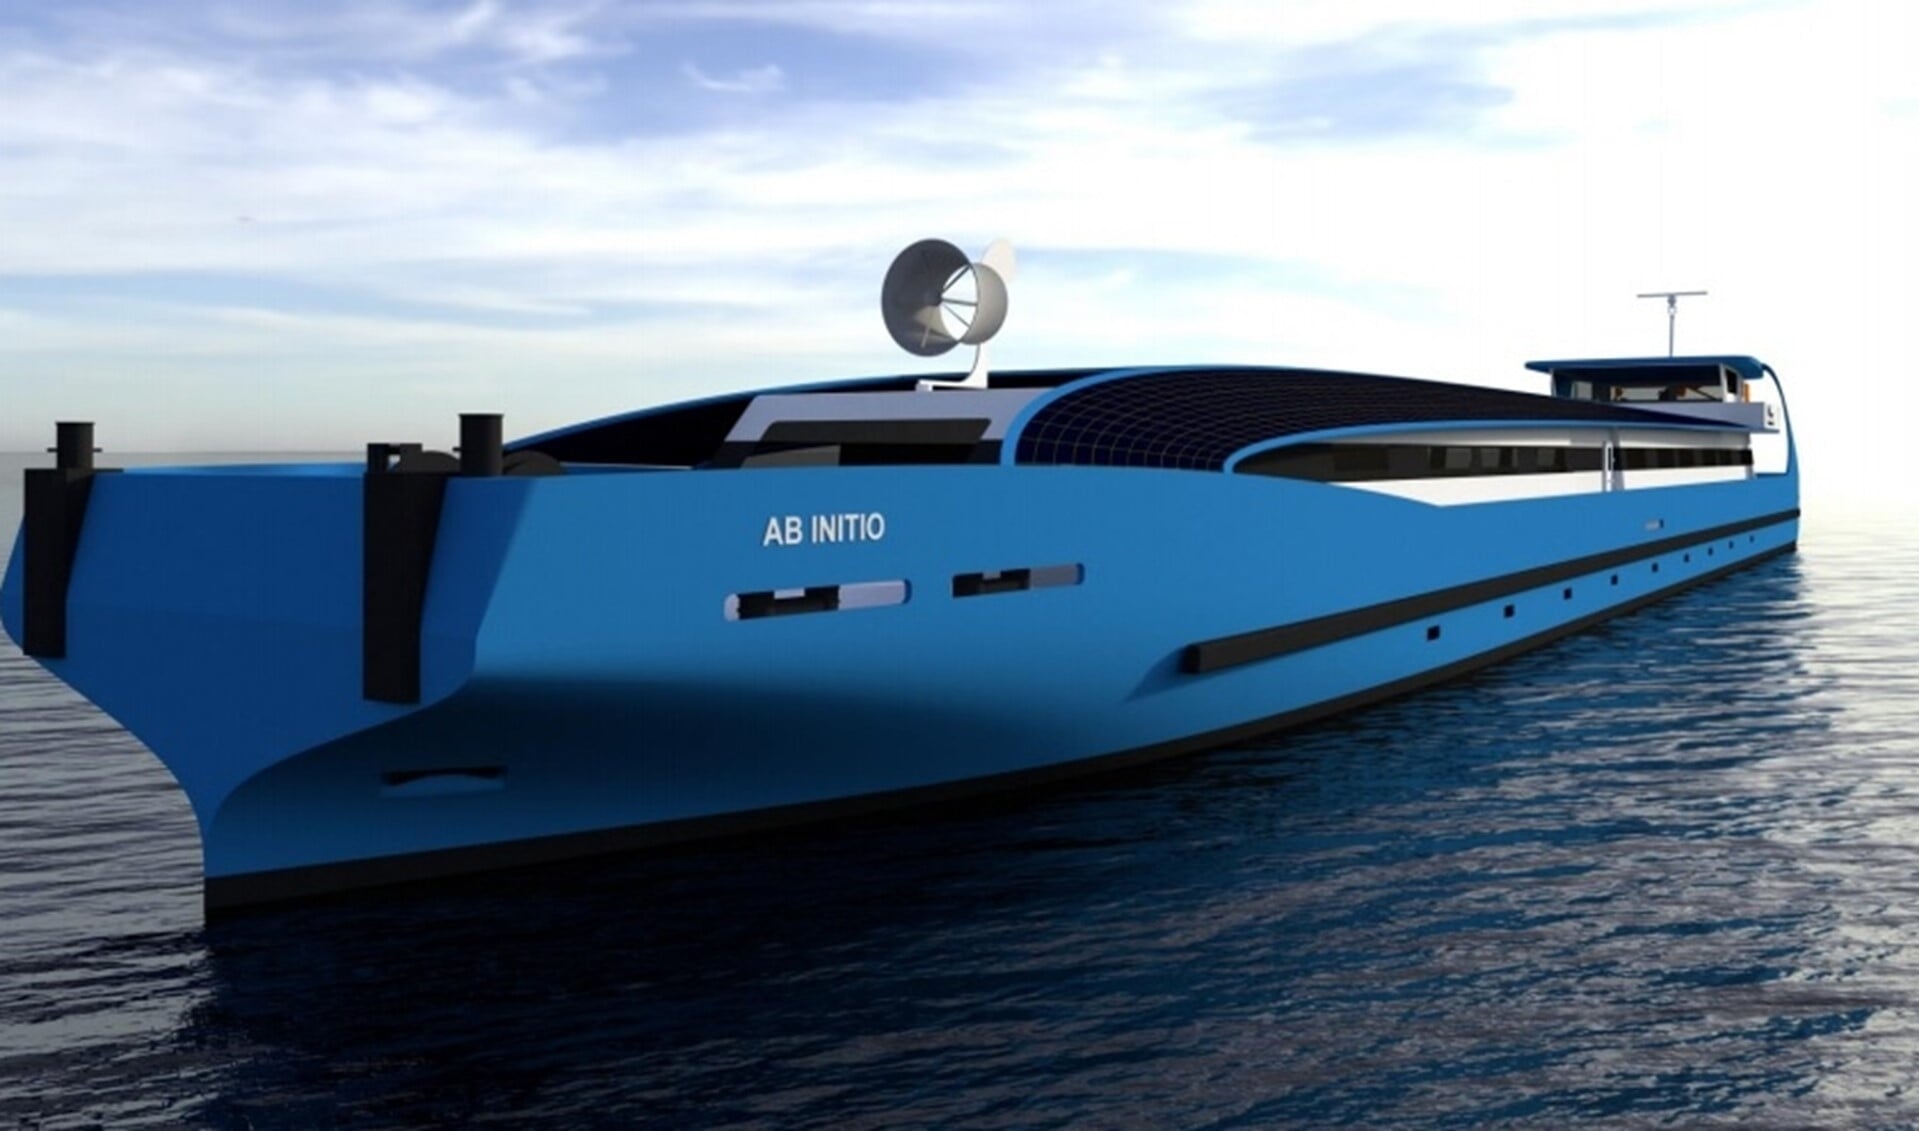 Het nieuwe, futuristisch ogende opleidingsschip AB INITIO komt naar verwachting in september 2022 in de vaart. Foto: STC